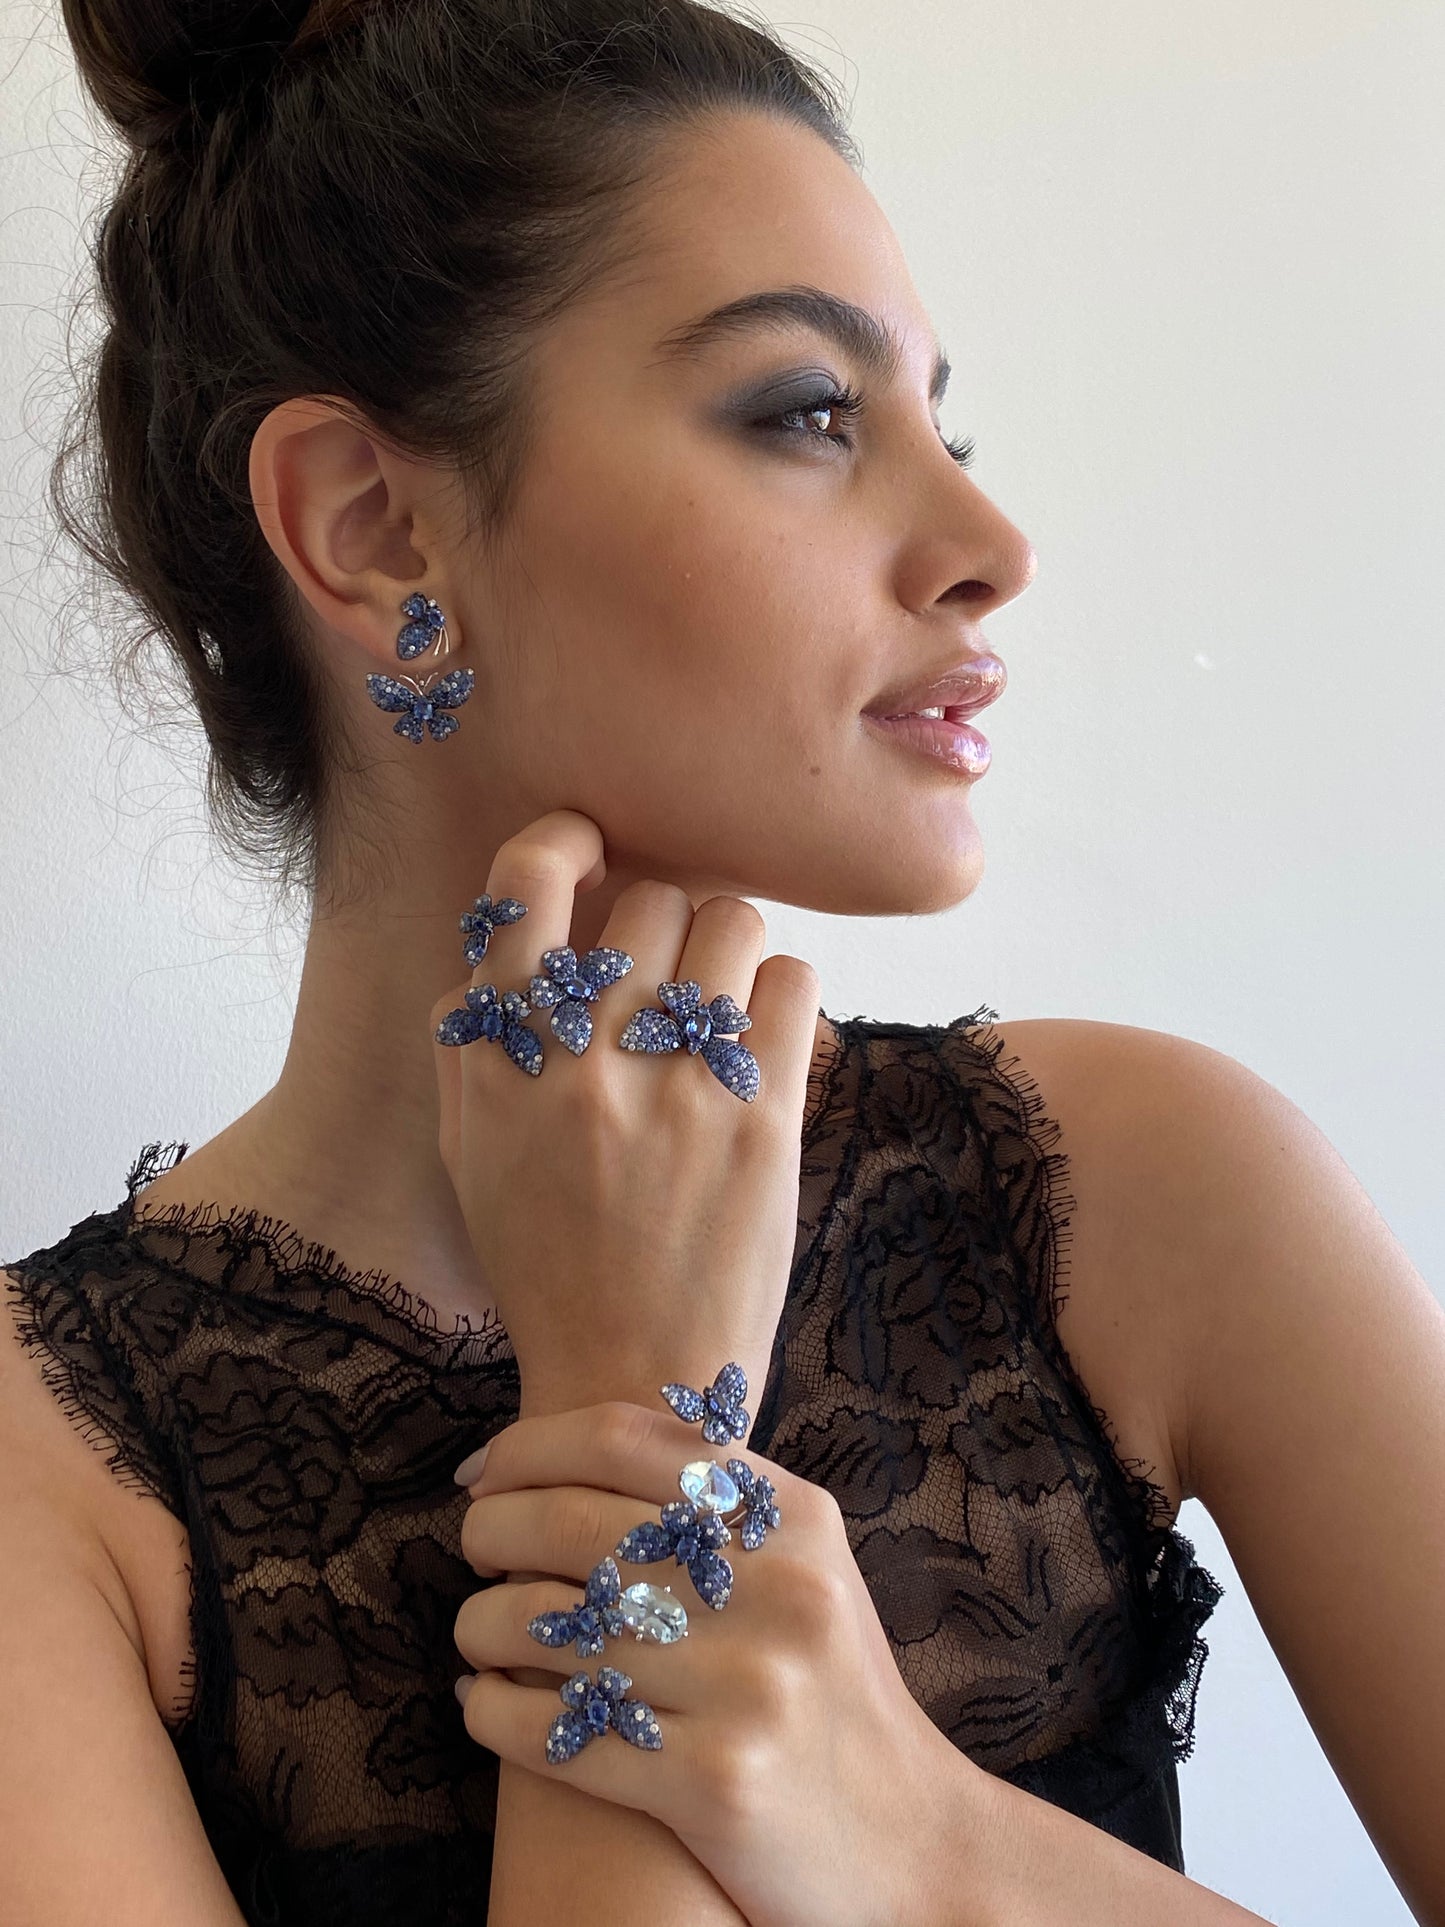 Blue Sapphire Butterfly Earrings